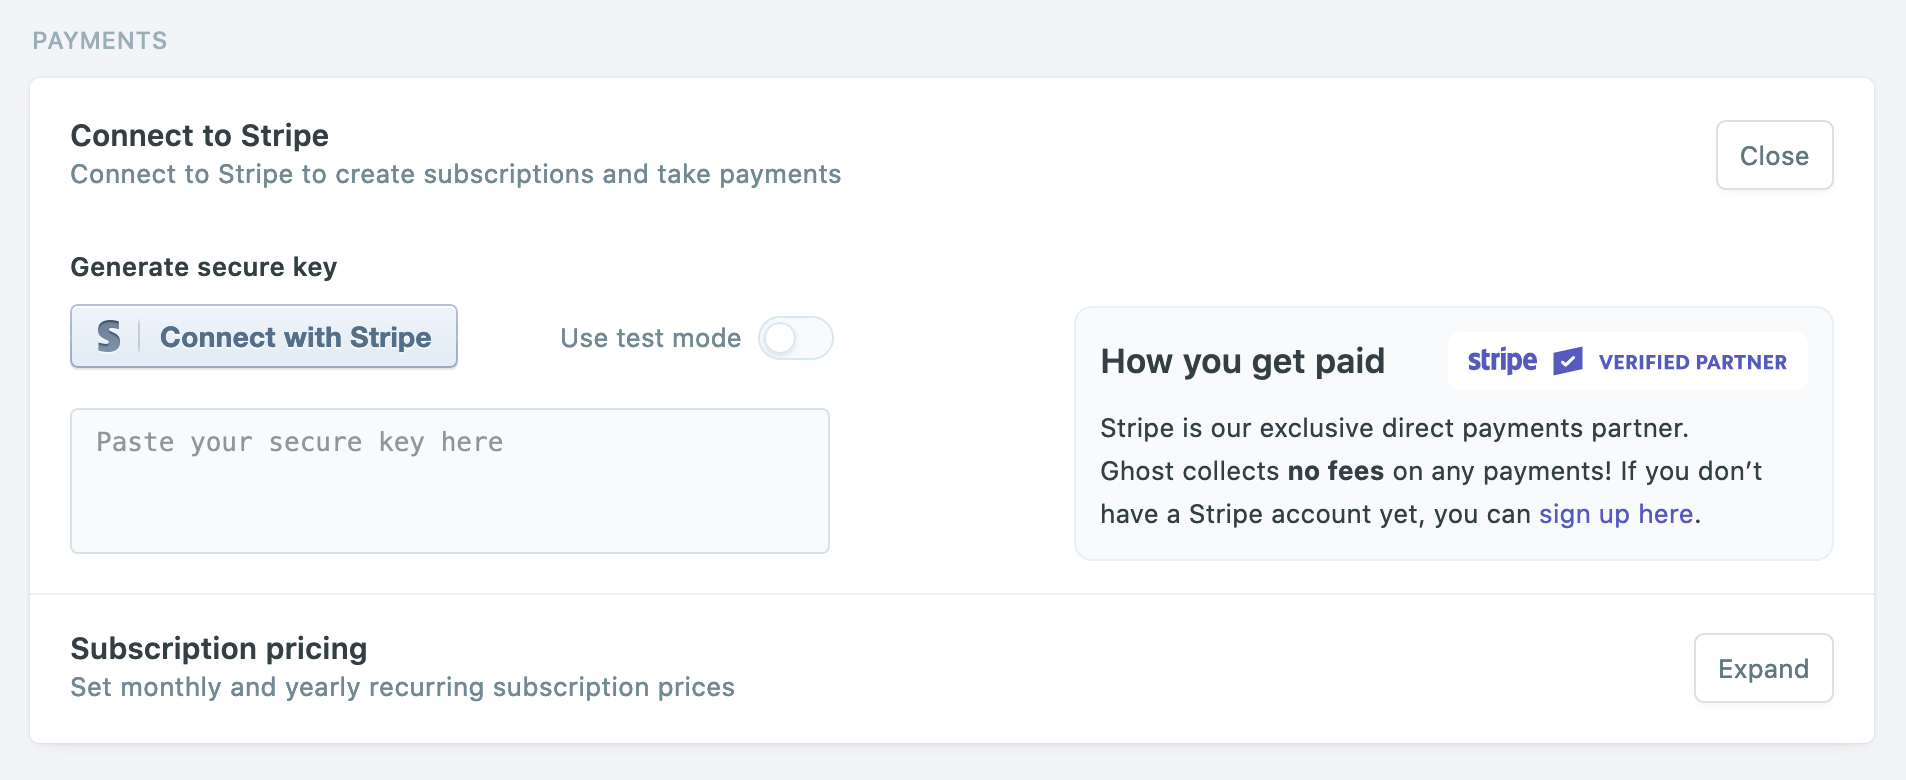 Member settings in Ghost Admin